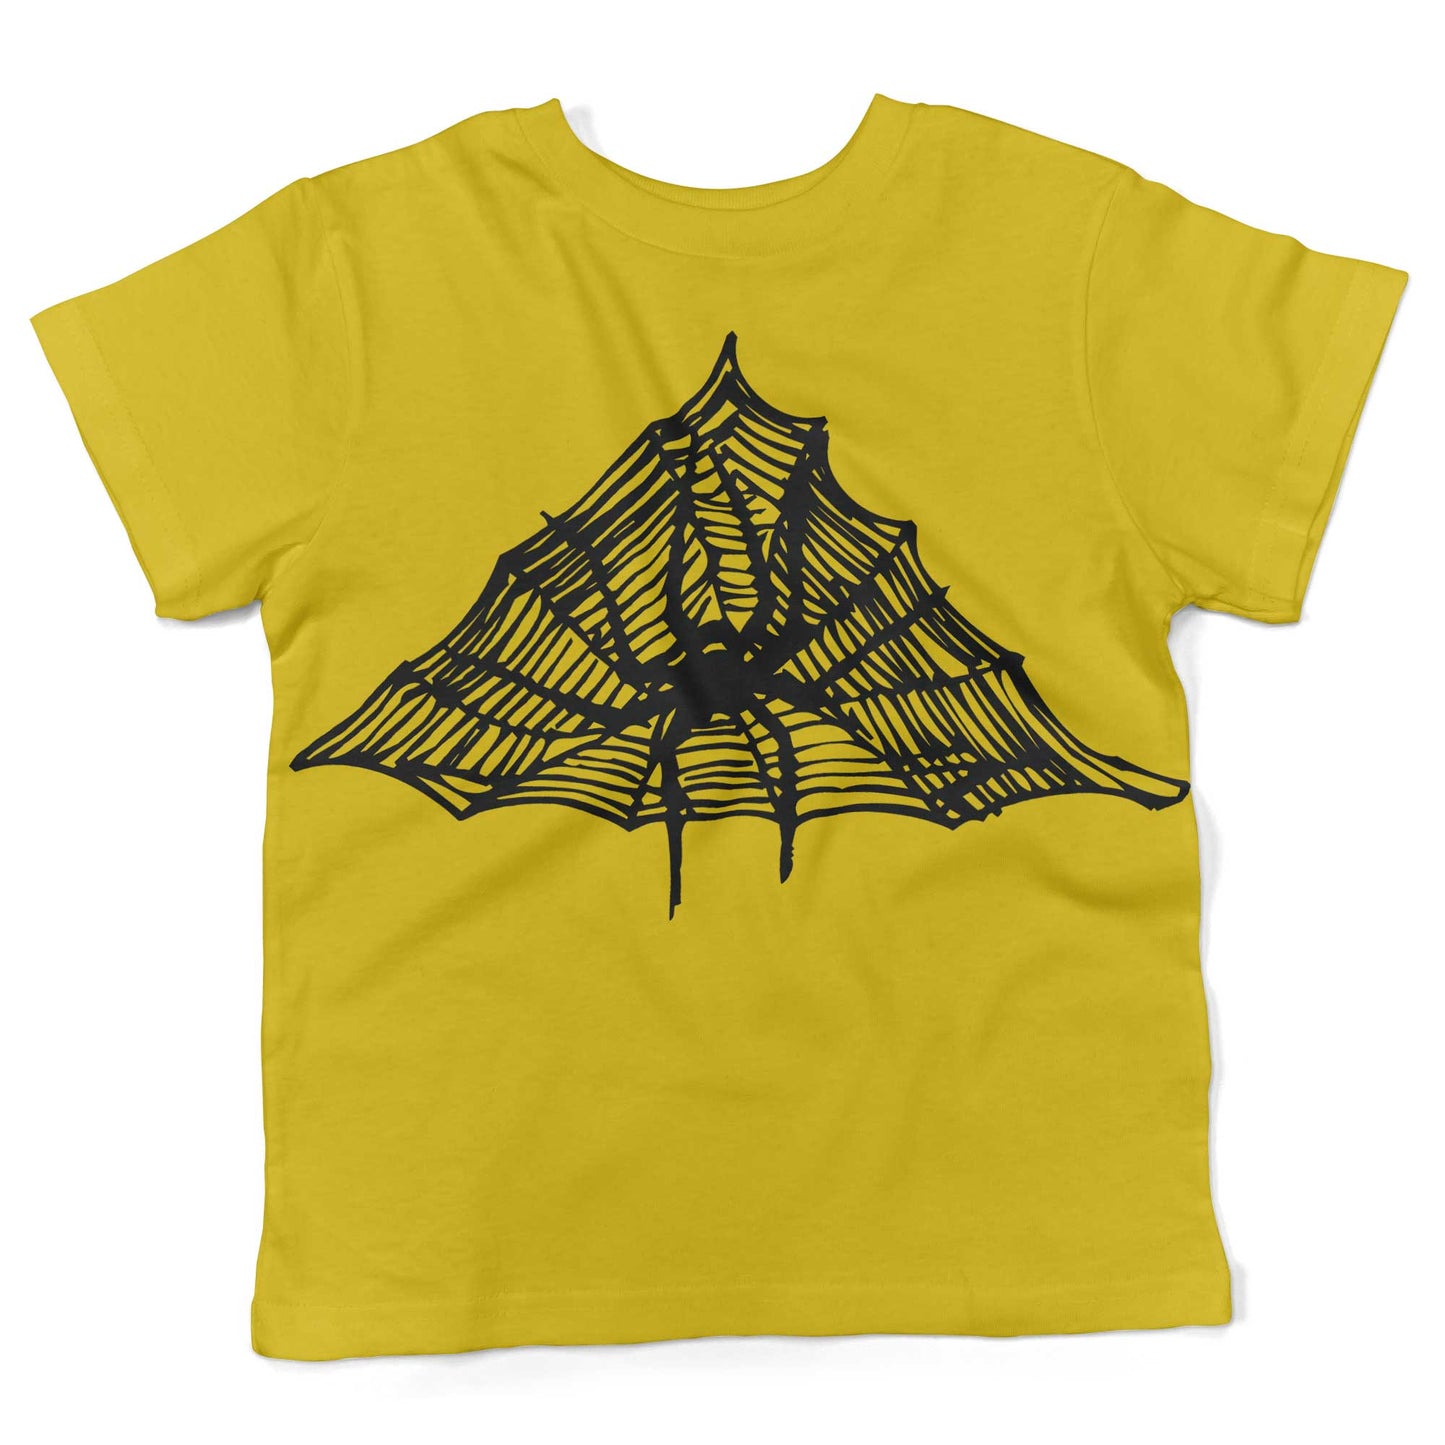 Spiderweb Toddler Shirt-Sunshine Yellow-2T